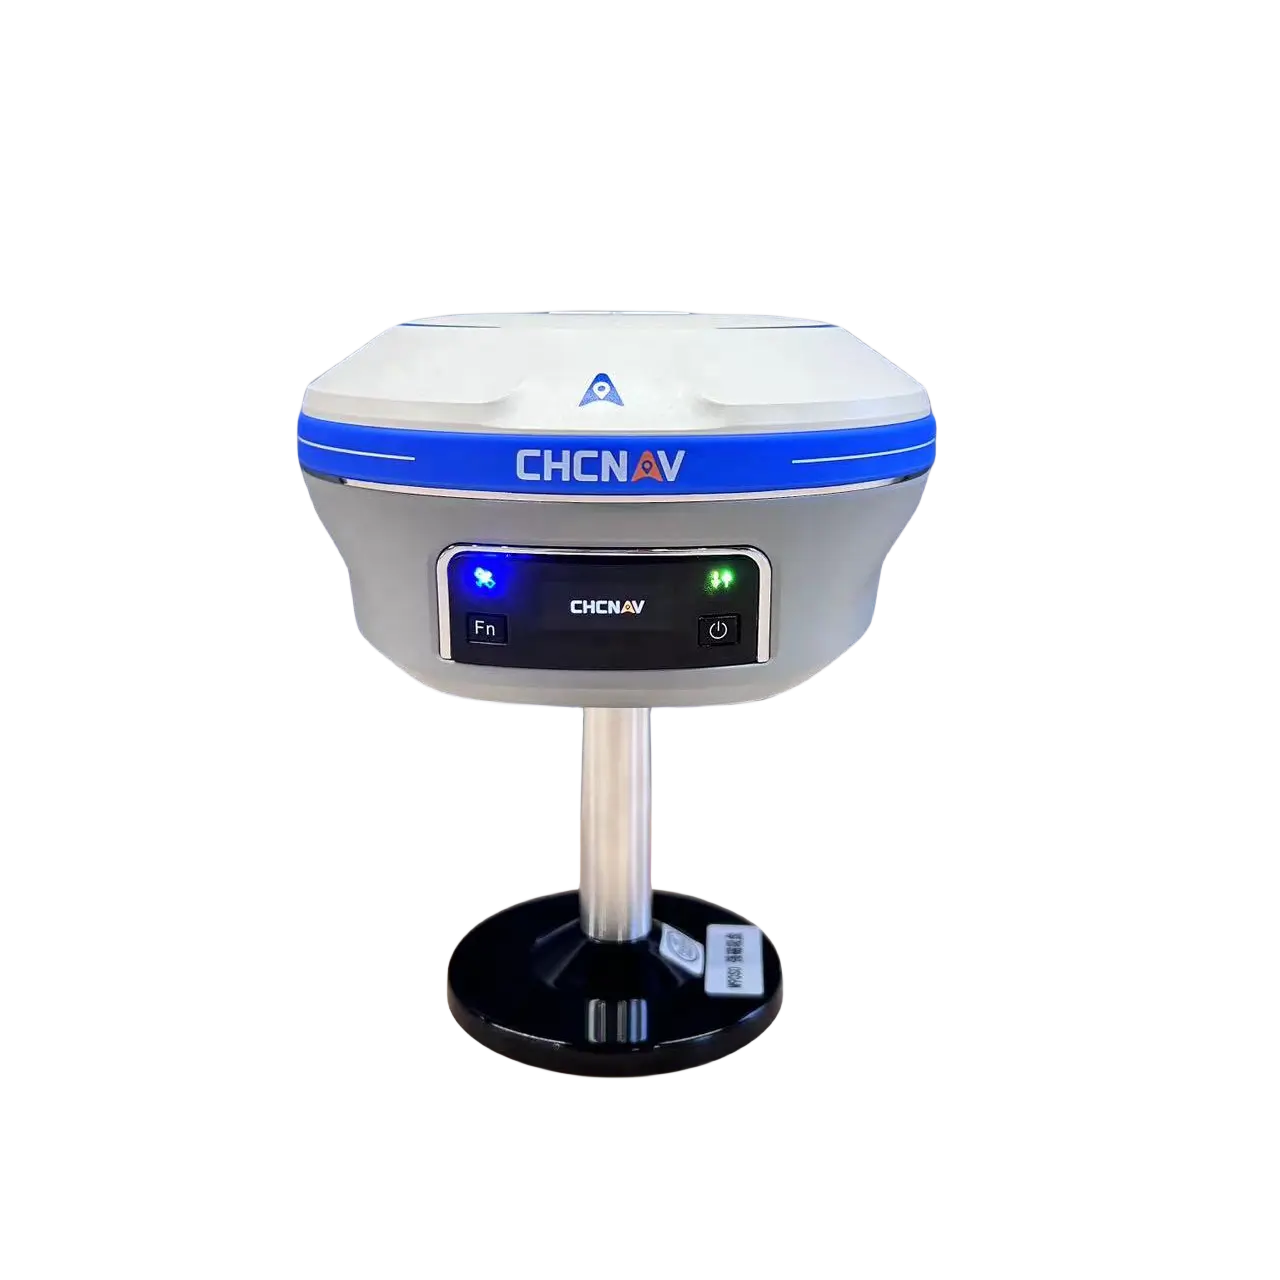 CHCNAV X16 Pro/i93 görsel IMU-RTK GNSS 1408 kanal ölçüm cihazı için enstrüman